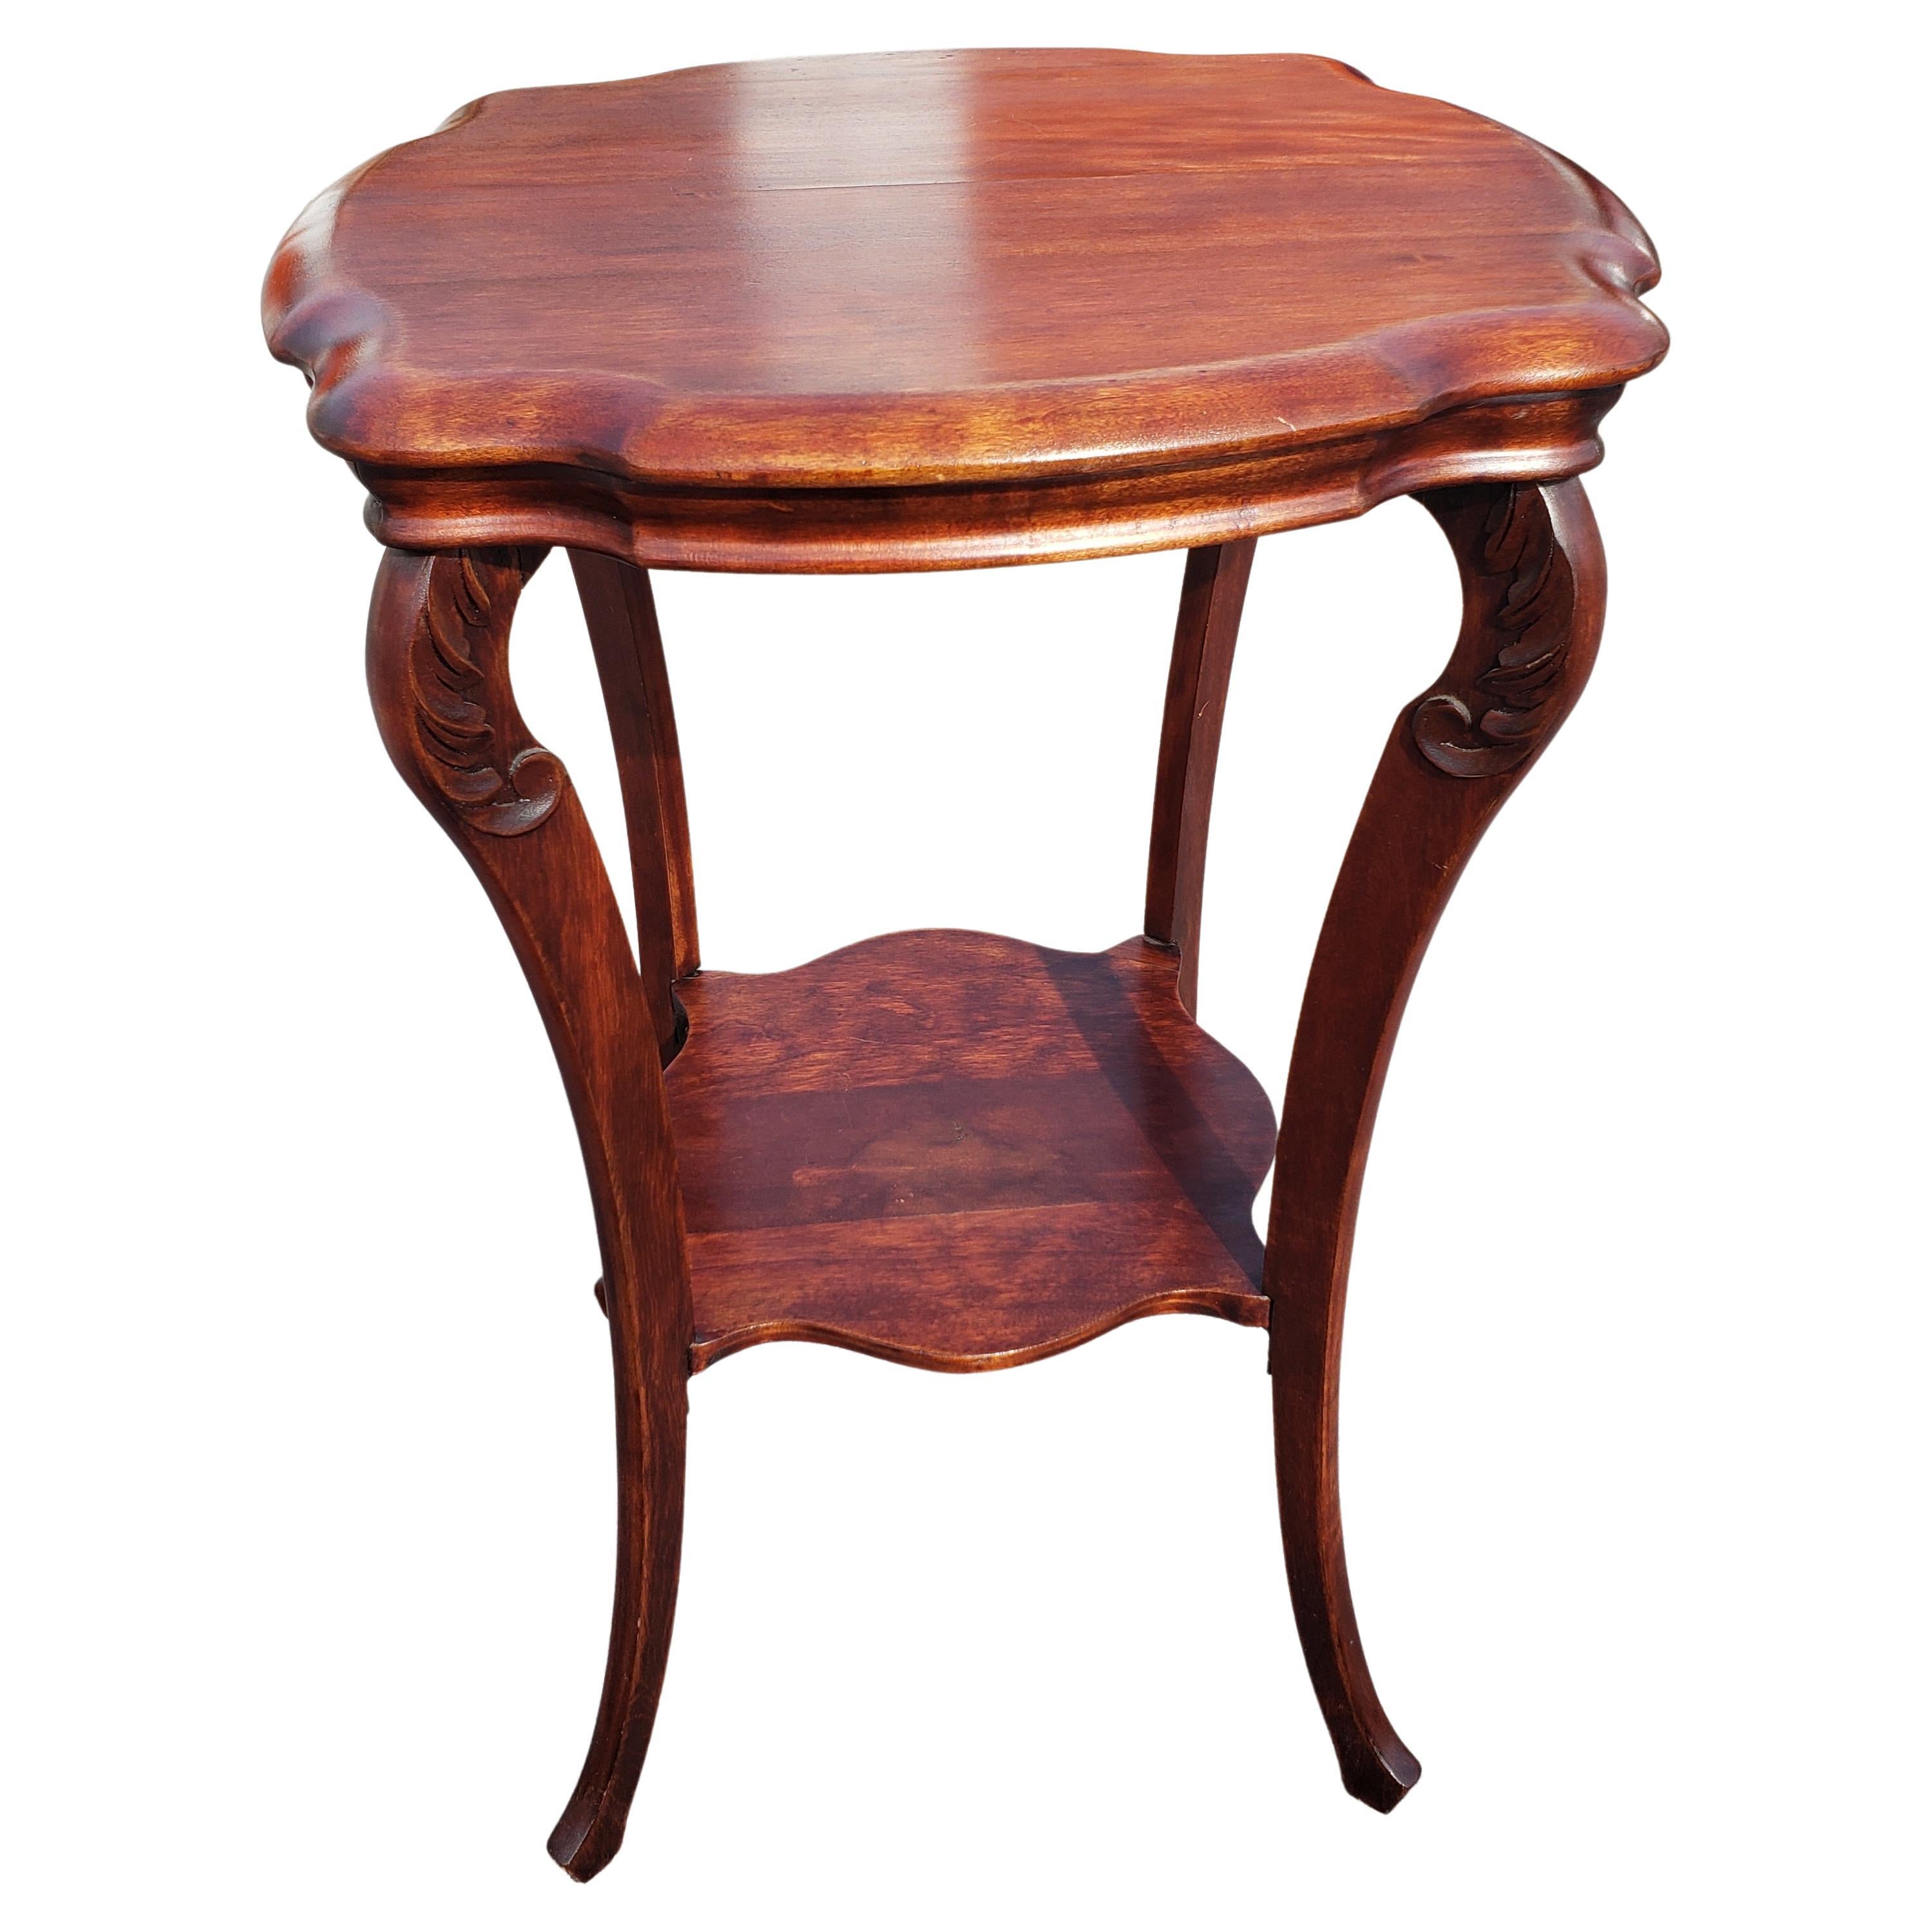 Sehr gut erhaltener 1800er Jamestown Mahagoni Tisch mit zwei Ebenen in sehr gutem Zustand.
Der Boden wurde für mehr Stabilität verstärkt. 
Maße: 20